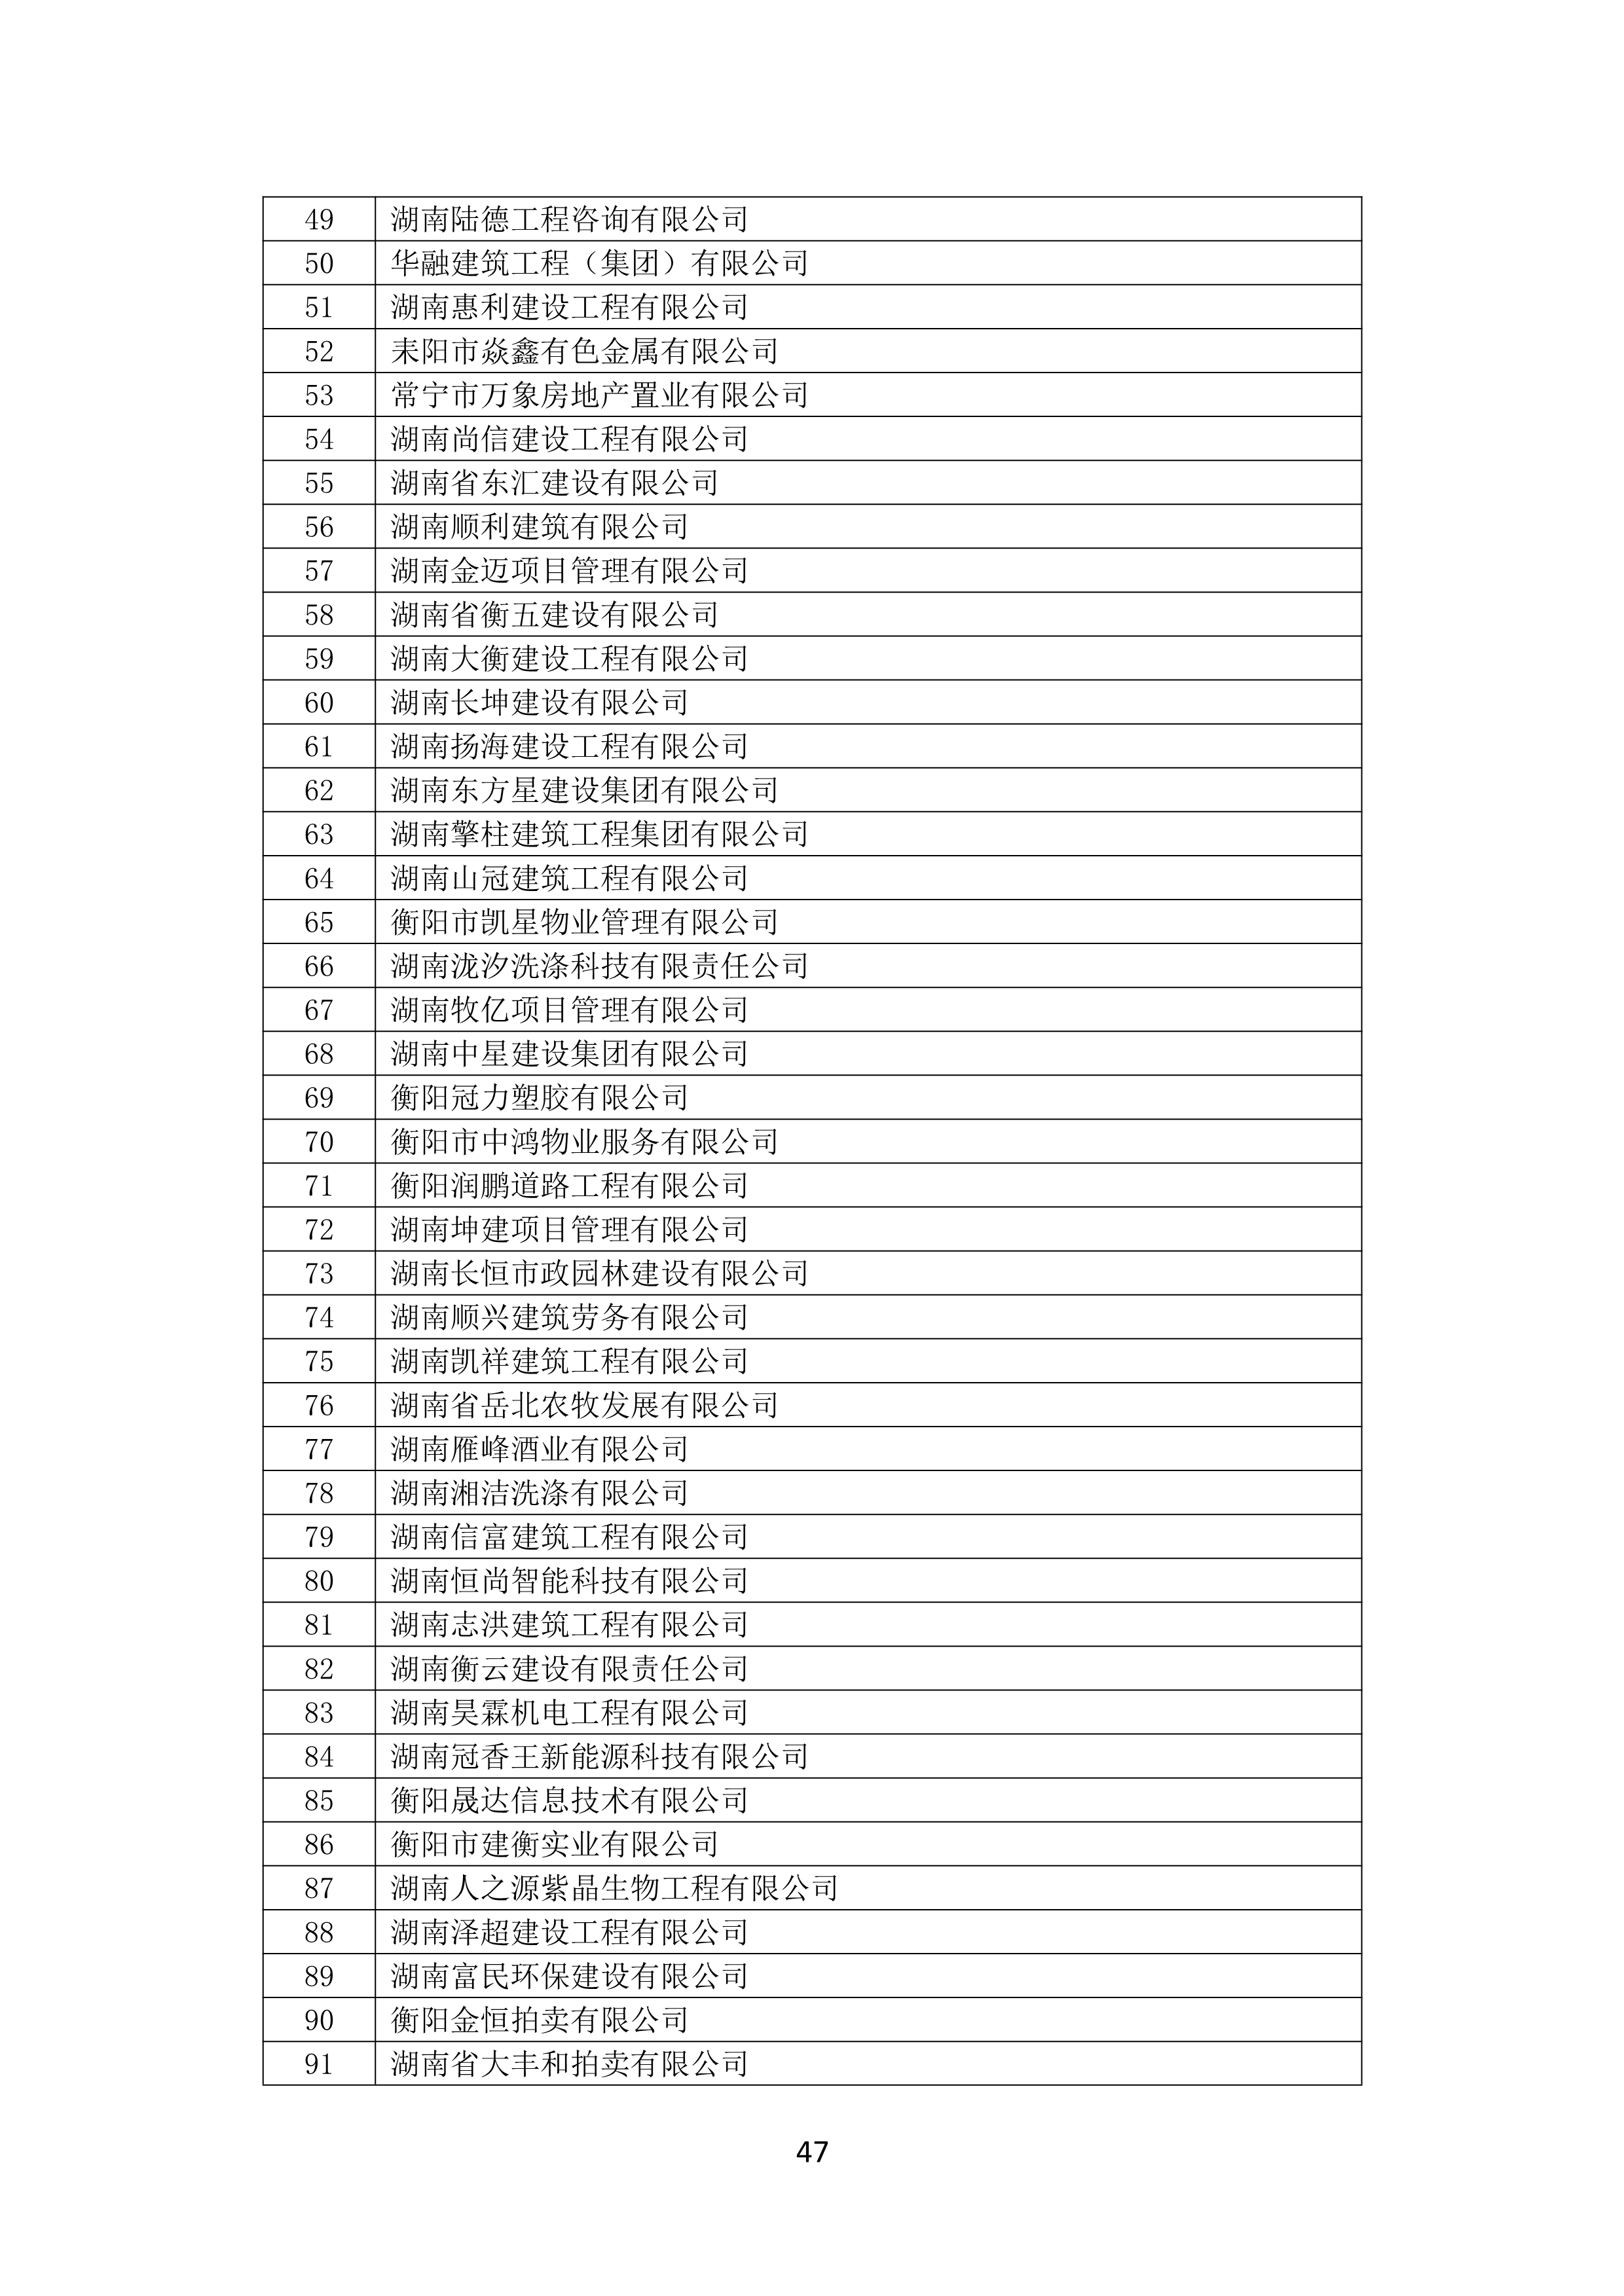 2021 年(nián)度湖南省守合同重信用企業名單_48.png